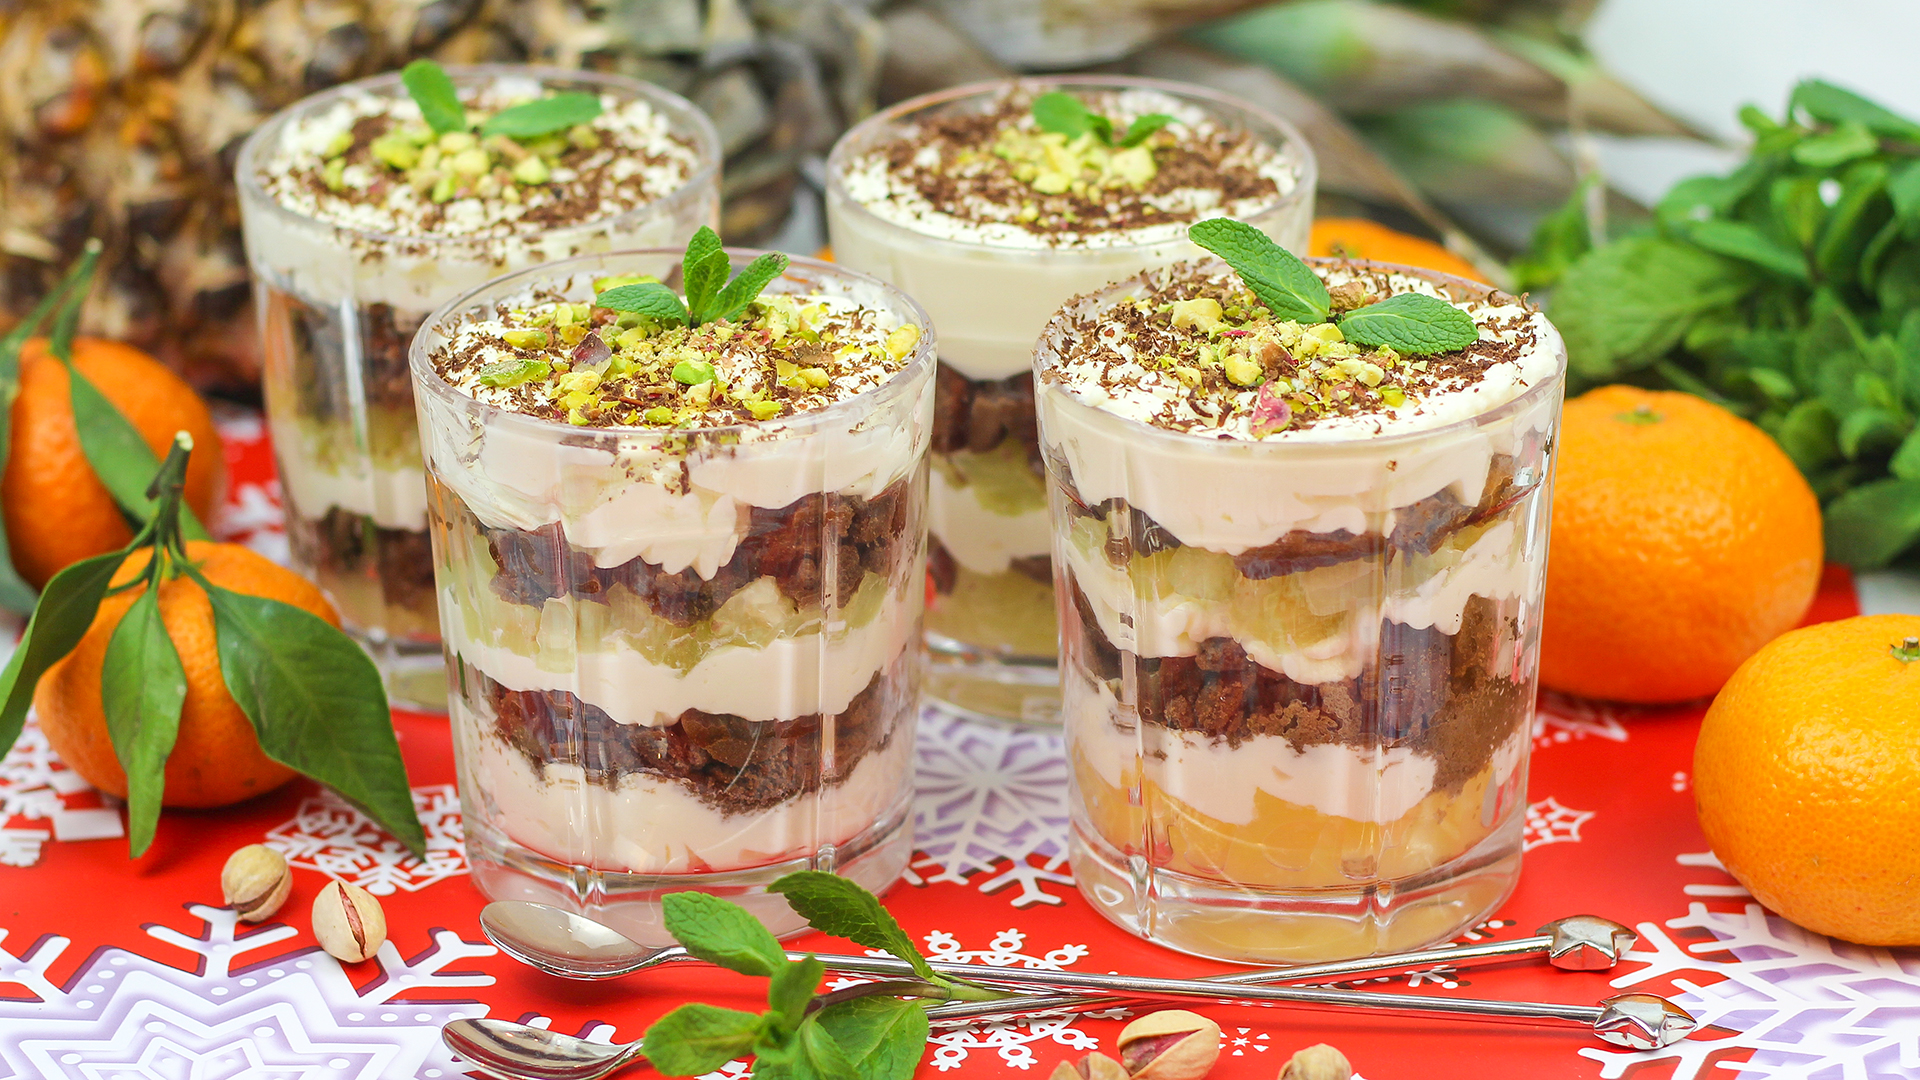 Десерты в стаканчиках рецепты с фото простые и вкусные в домашних условиях пошагово